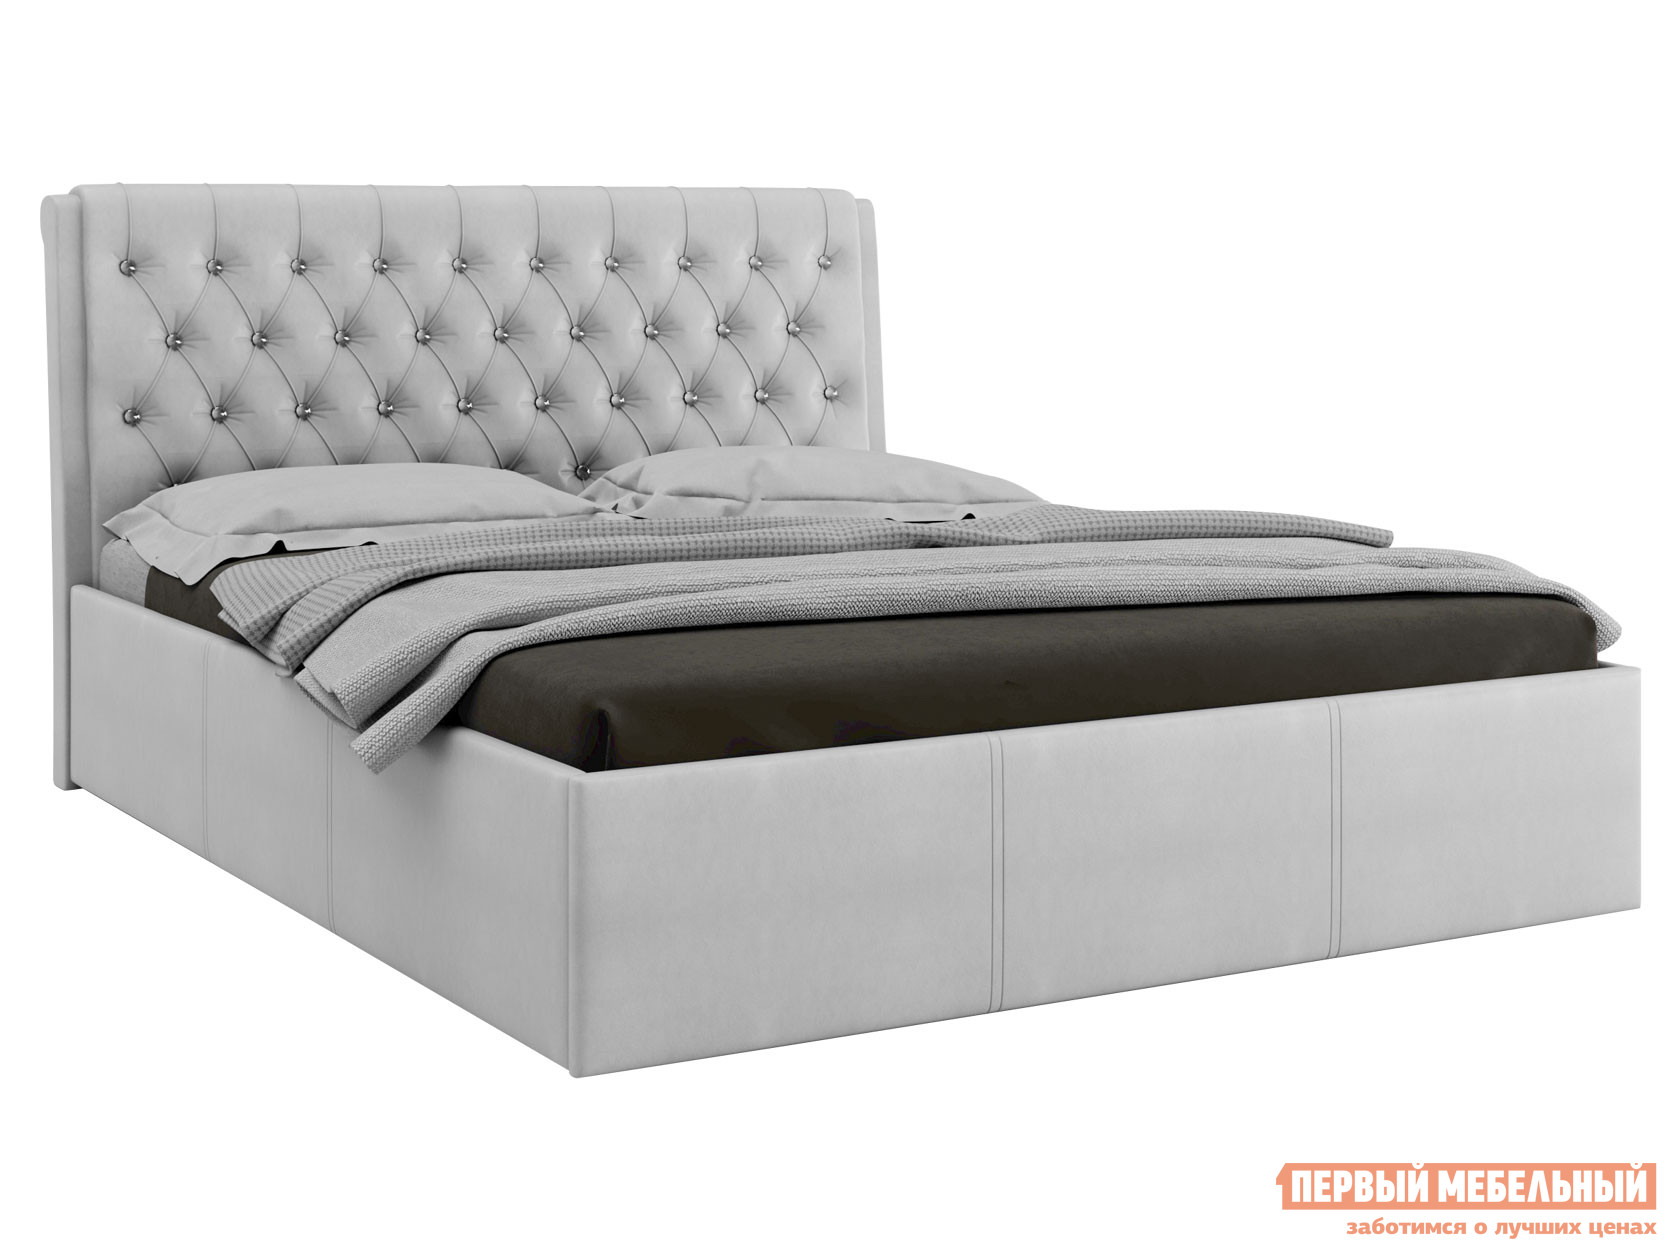 Двуспальная кровать  Прима ПМ Белый, экокожа, 160х200 см